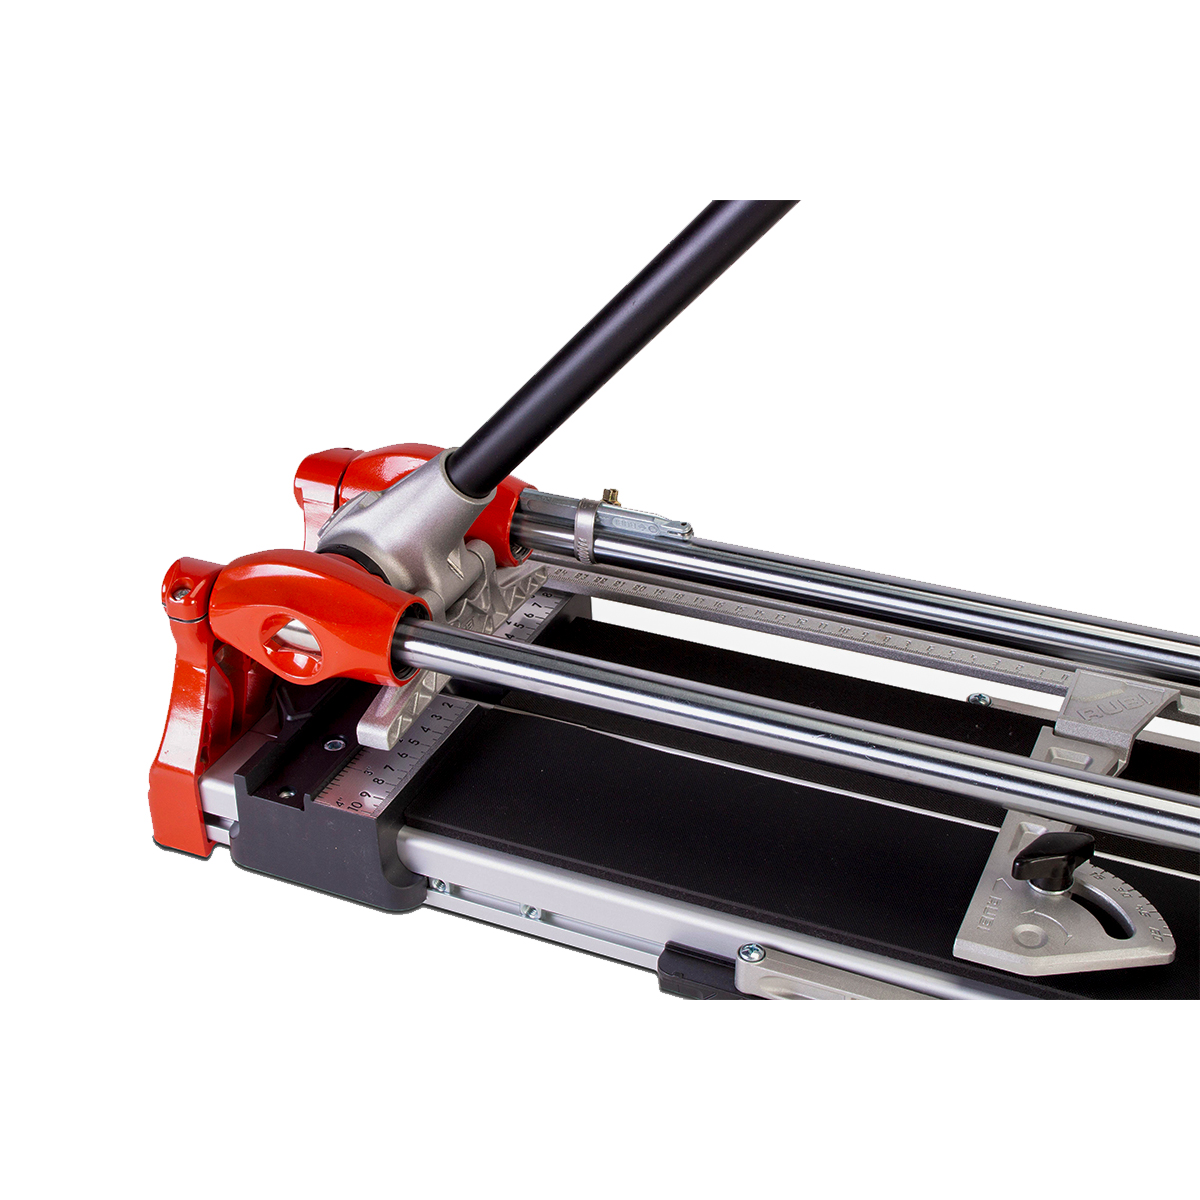 Cuidado y mantenimiento de tu cortadora manual – RUBI Blog